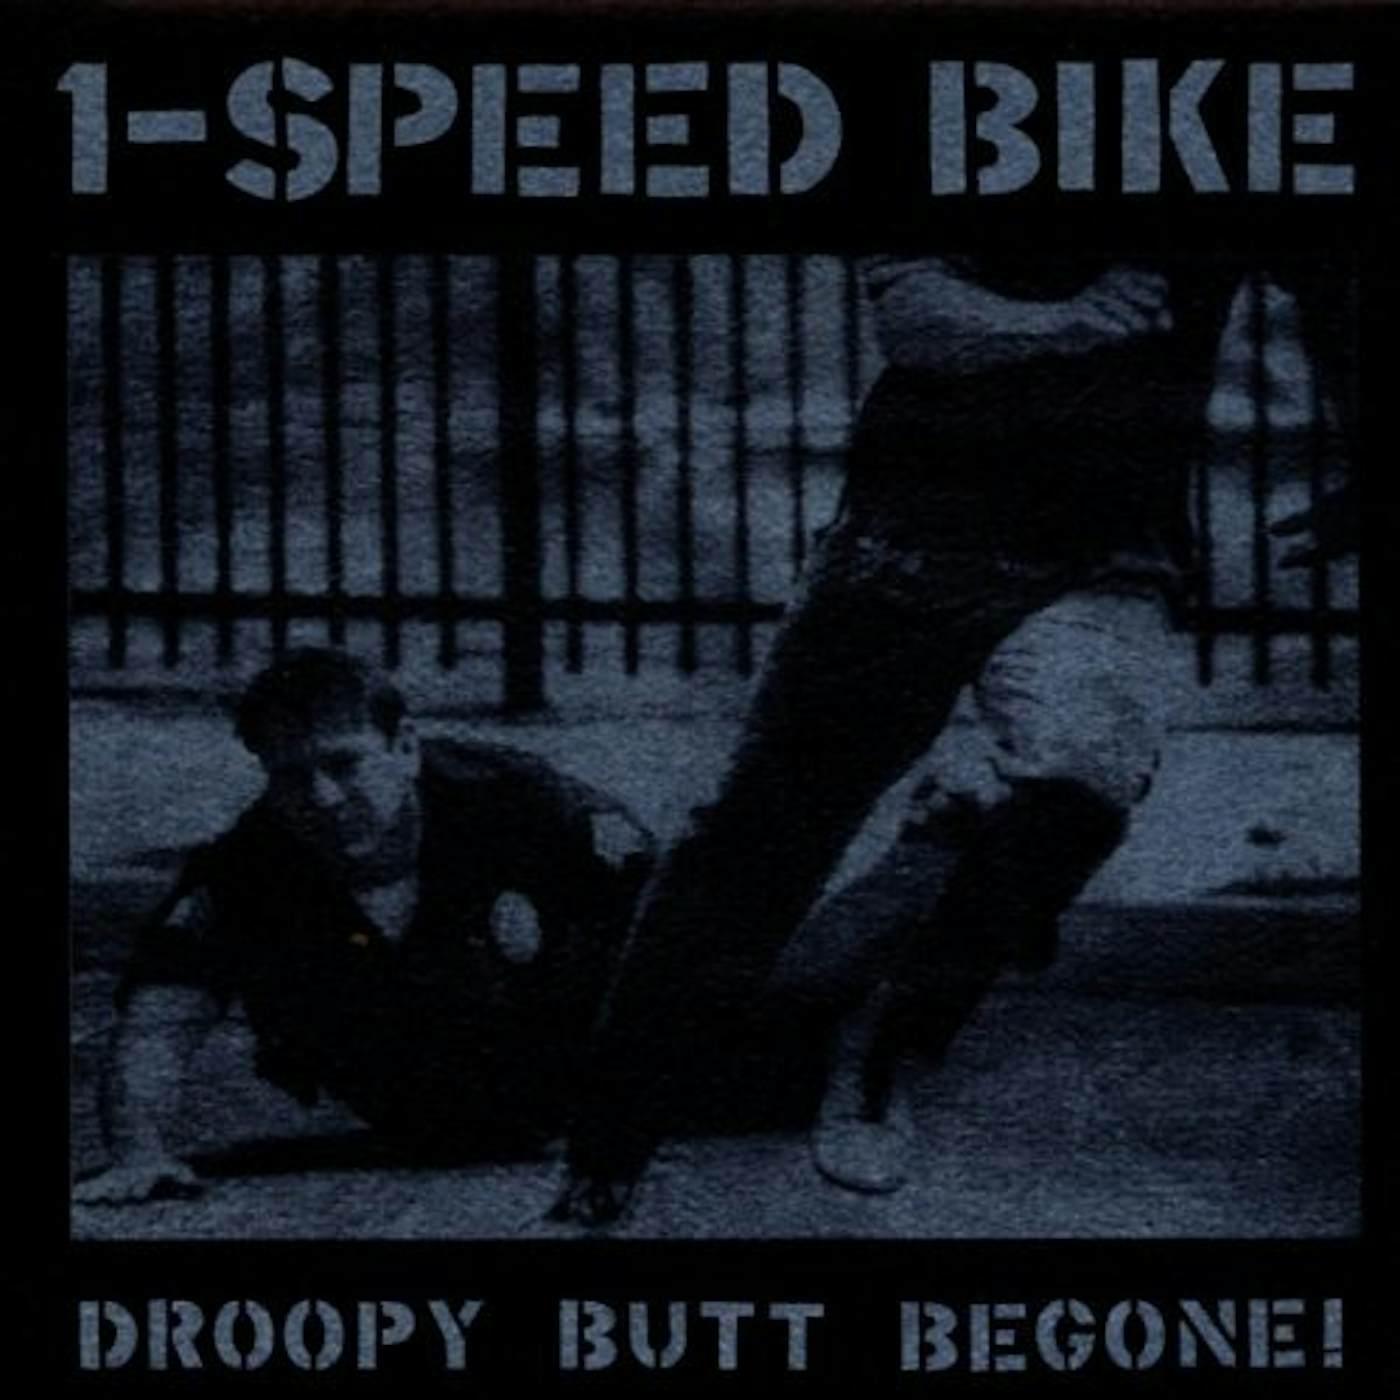 1-Speed Bike DROOPY BUTT BEGONE CD